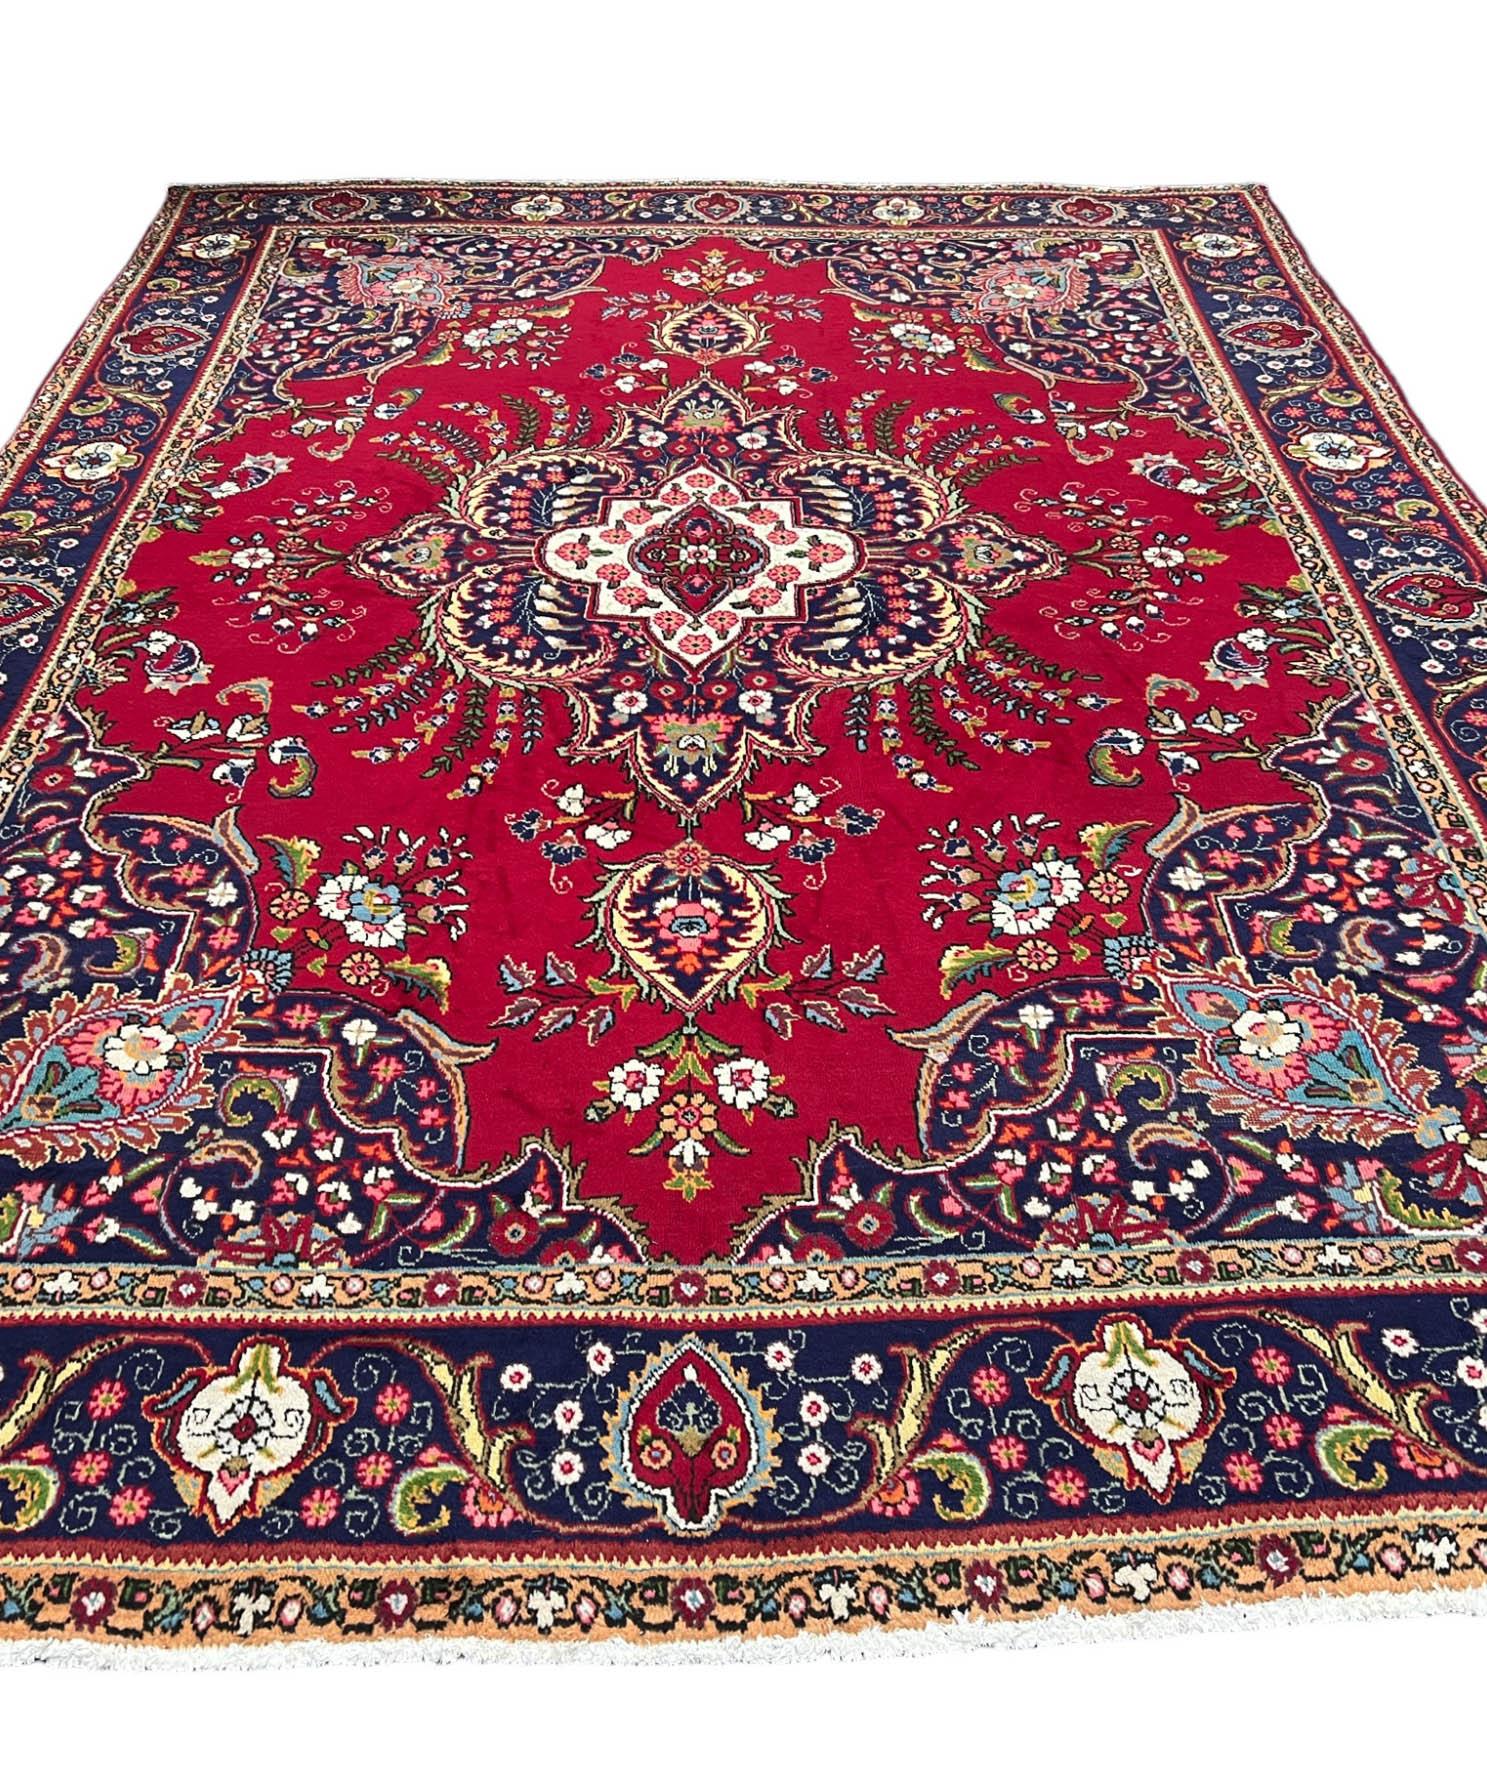 Ein wunderschöner persischer Tabriz im Vintage-Stil. Der Teppich zeichnet sich durch eine Kombination aus leuchtenden Rottönen aus, die durch Akzente in Blau, Grün und dezentem, gedämpftem Gelb ergänzt werden. Die filigranen Muster und satten Farben